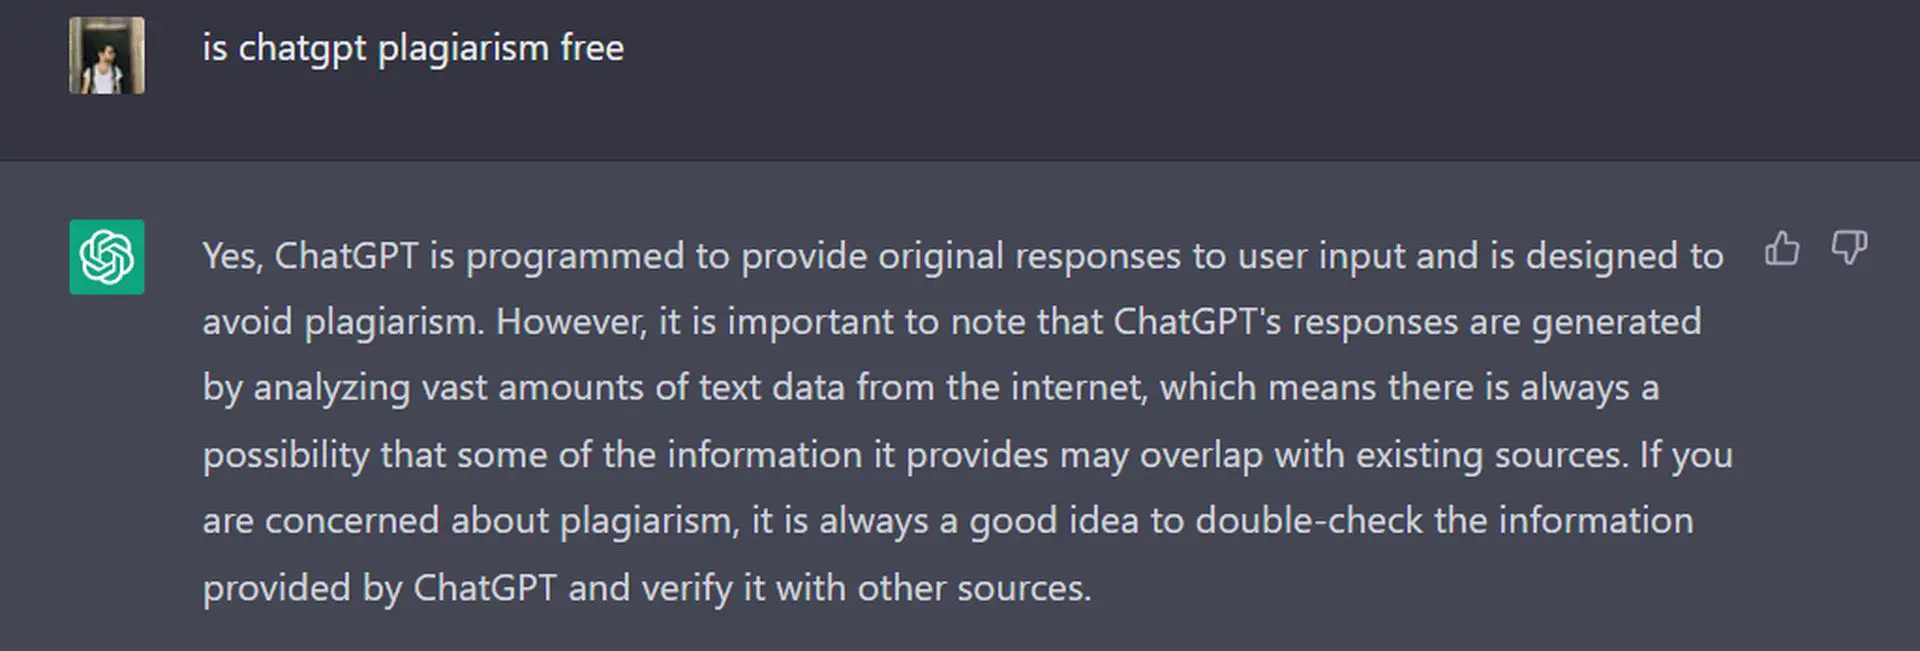 ¿Está ChatGPT libre de plagio? ChatGPT no incluye ningún contenido plagiado, pero no es completamente ético. Además, hay verificadores de plagio para detectarlo.